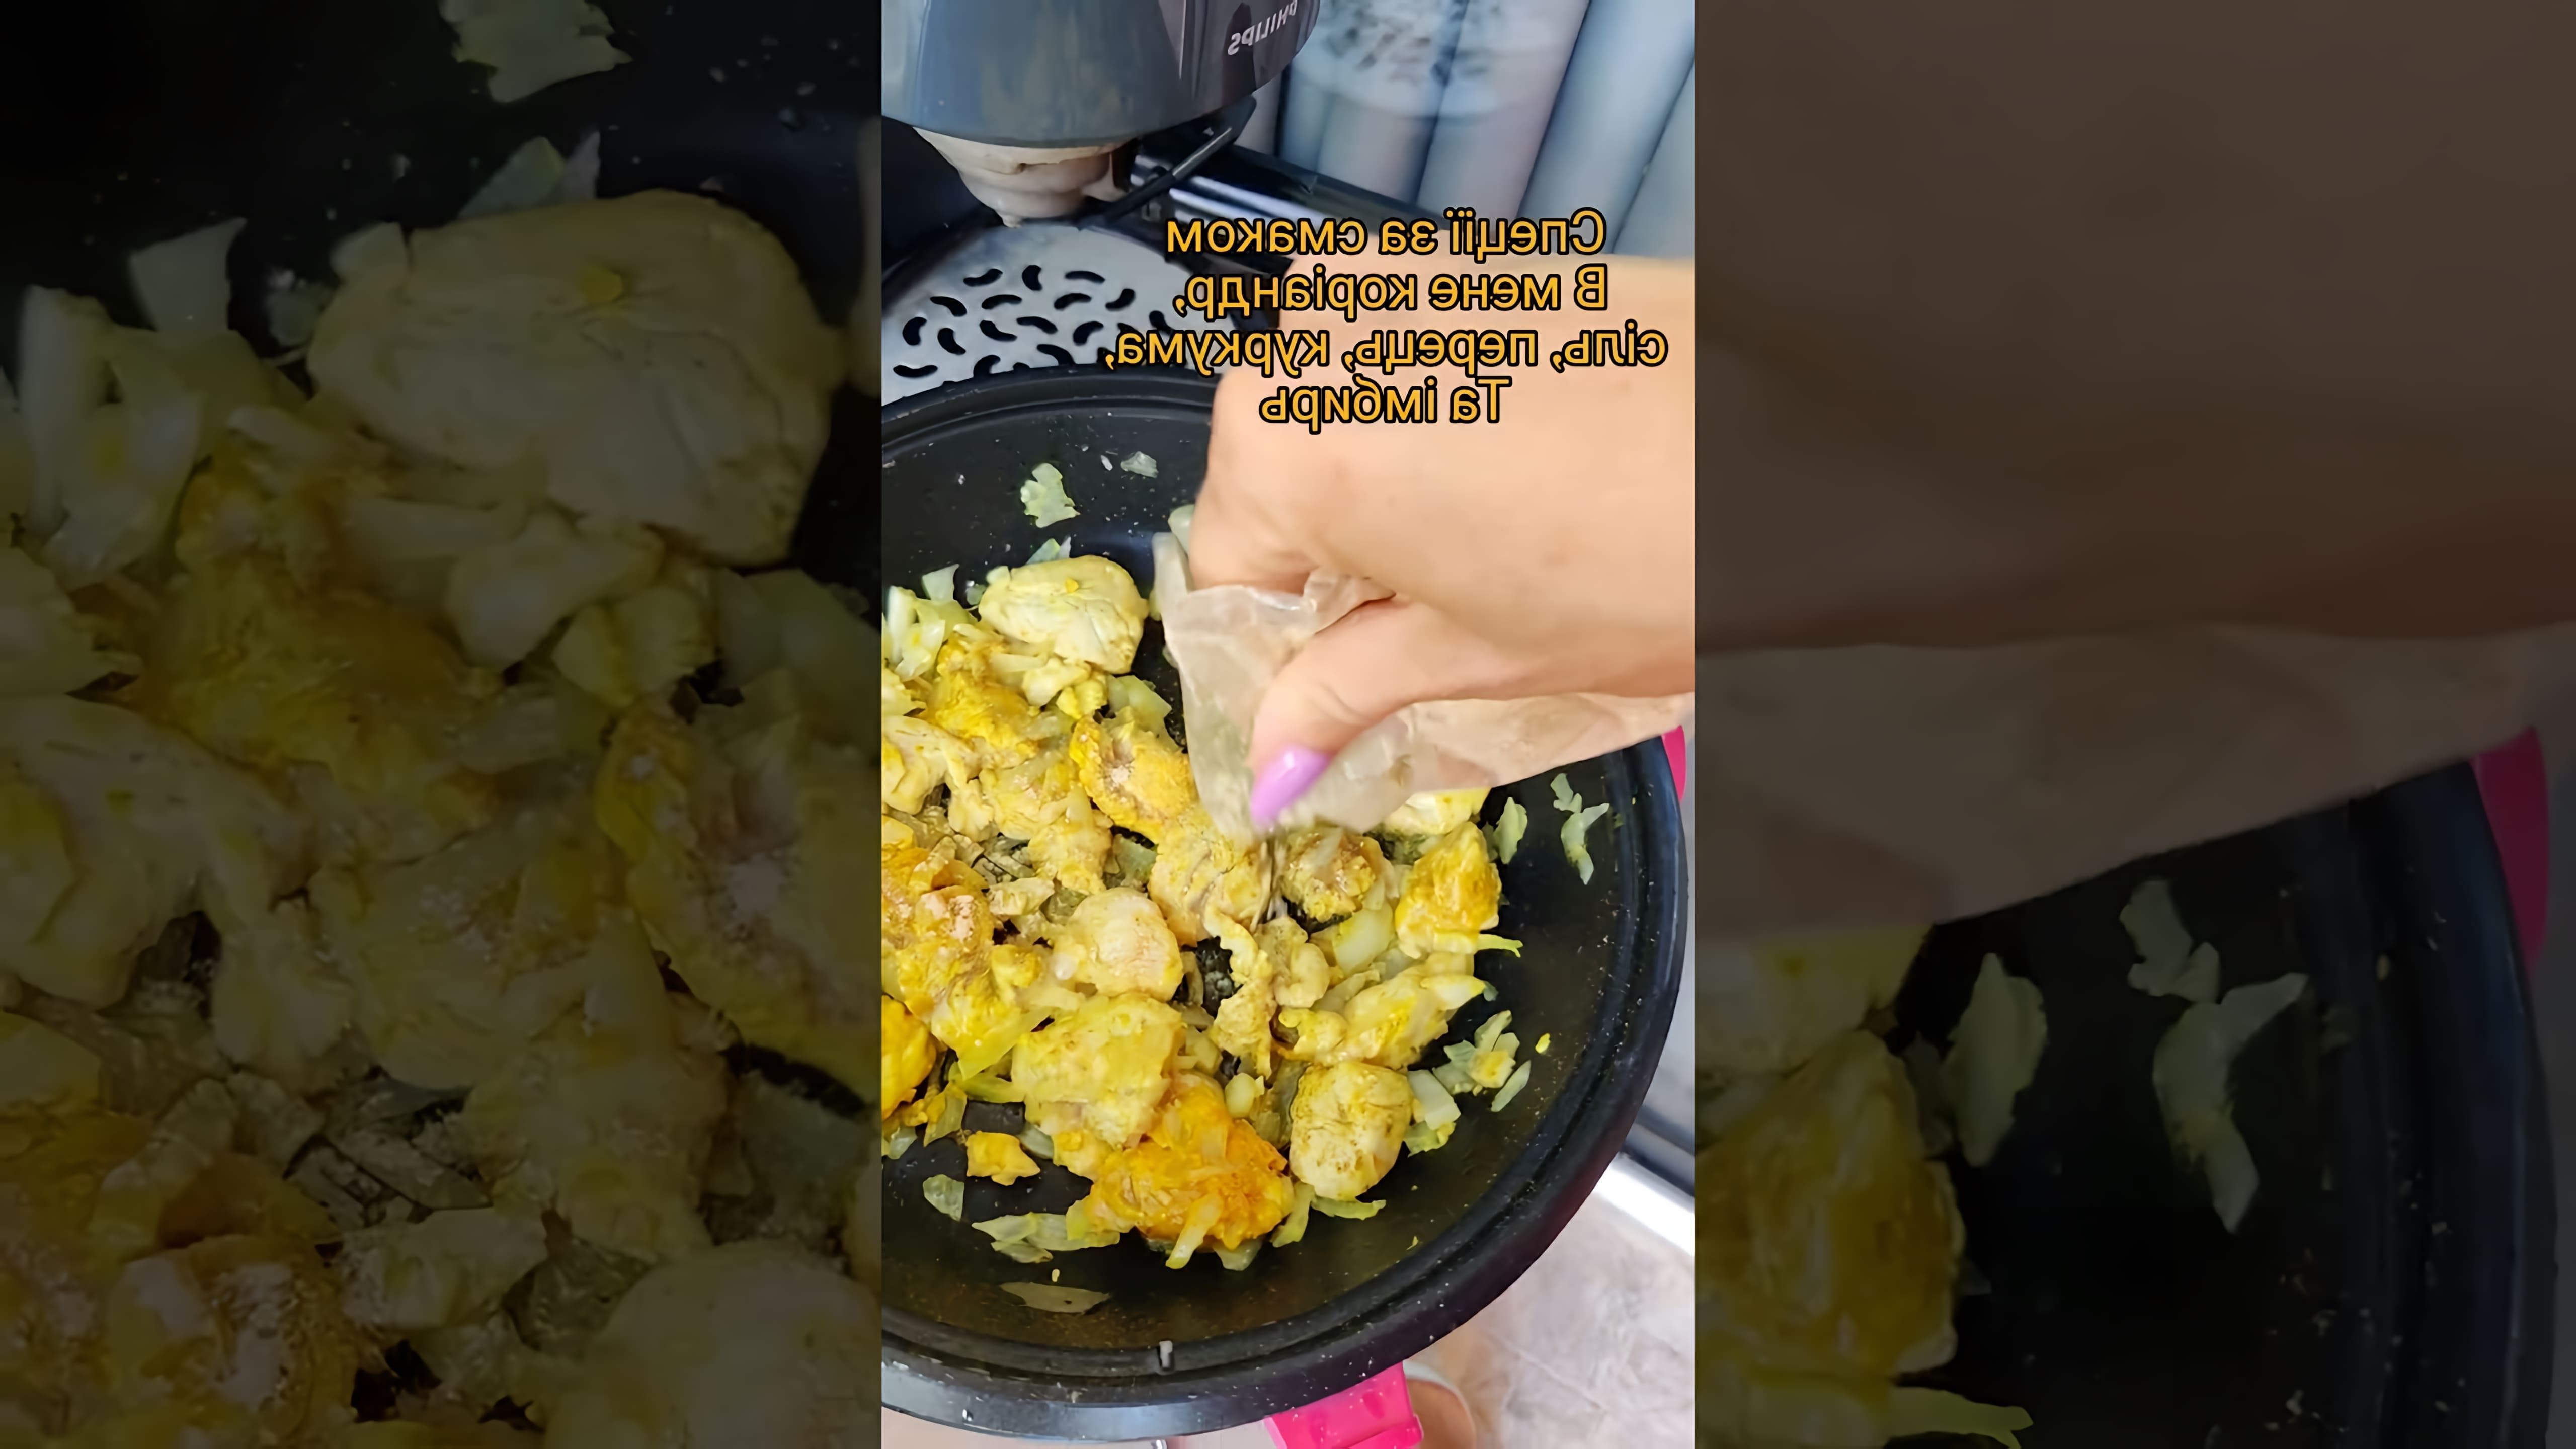 В этом видео-ролике мы увидим, как приготовить вкусный и сбалансированный обед или ужин - курицу с рисом в ананасе